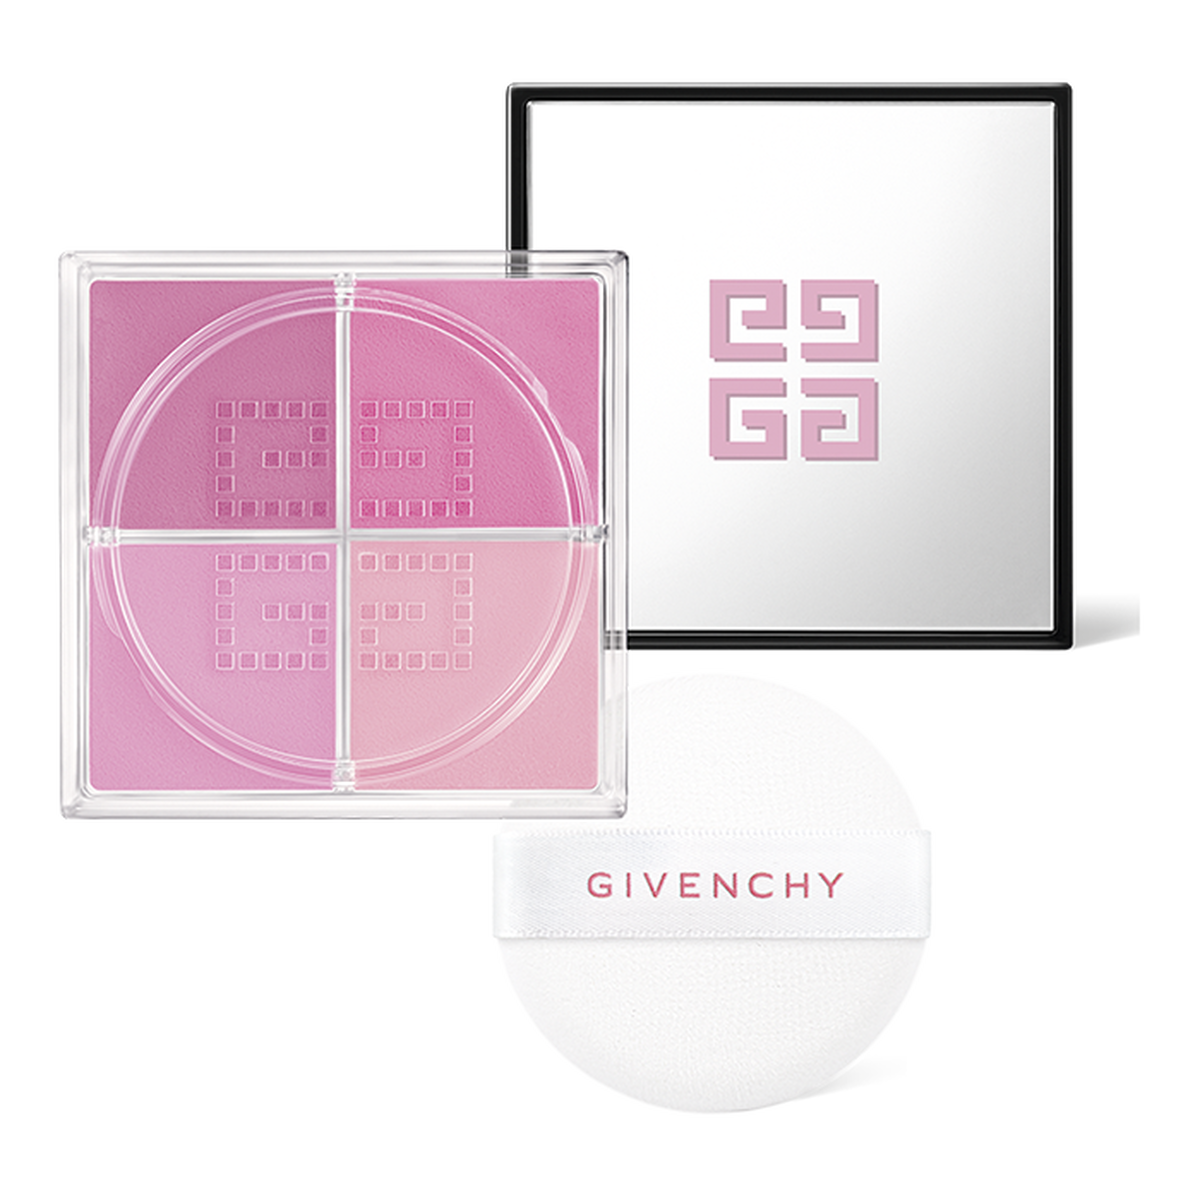 プリズム・リーブル・ブラッシュ - チーク カラー | Givenchy Beauty